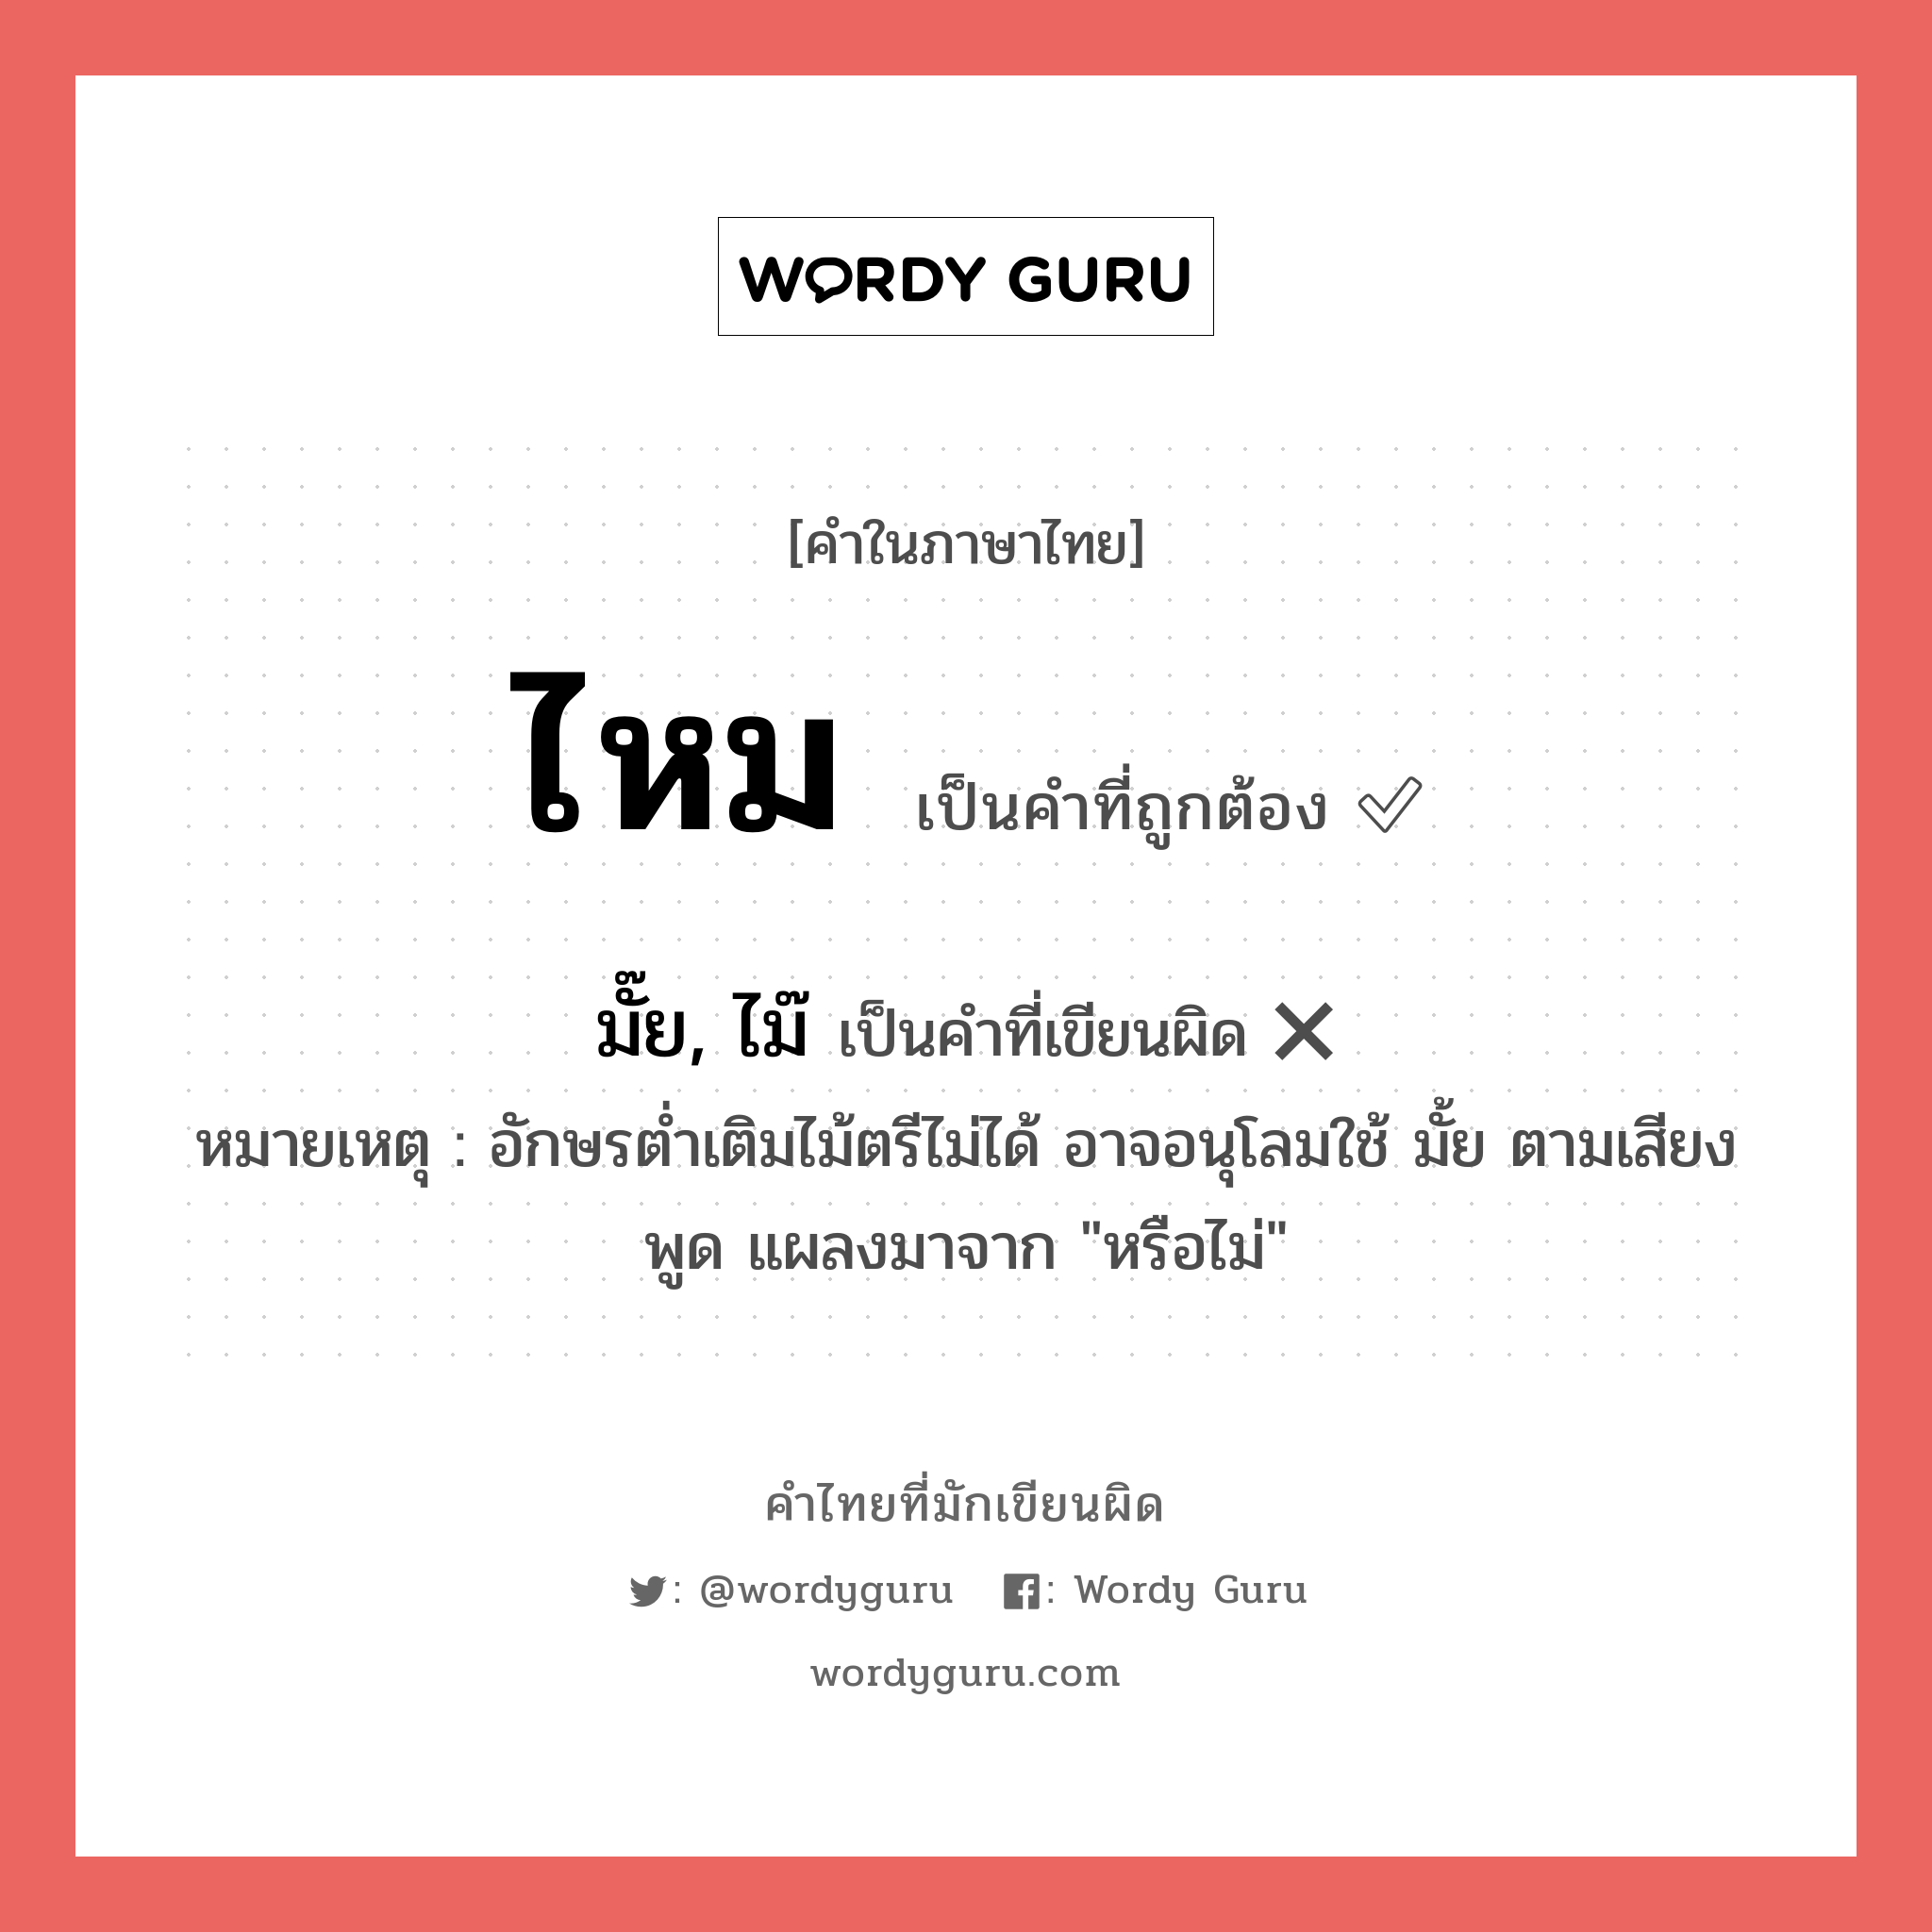 มั๊ย, ไม๊ หรือ ไหม คำไหนเขียนถูก?, คำในภาษาไทยที่มักเขียนผิด มั๊ย, ไม๊ คำที่ผิด ❌ ไหม หมายเหตุ อักษรต่ำเติมไม้ตรีไม่ได้ อาจอนุโลมใช้ มั้ย ตามเสียงพูด แผลงมาจาก "หรือไม่"